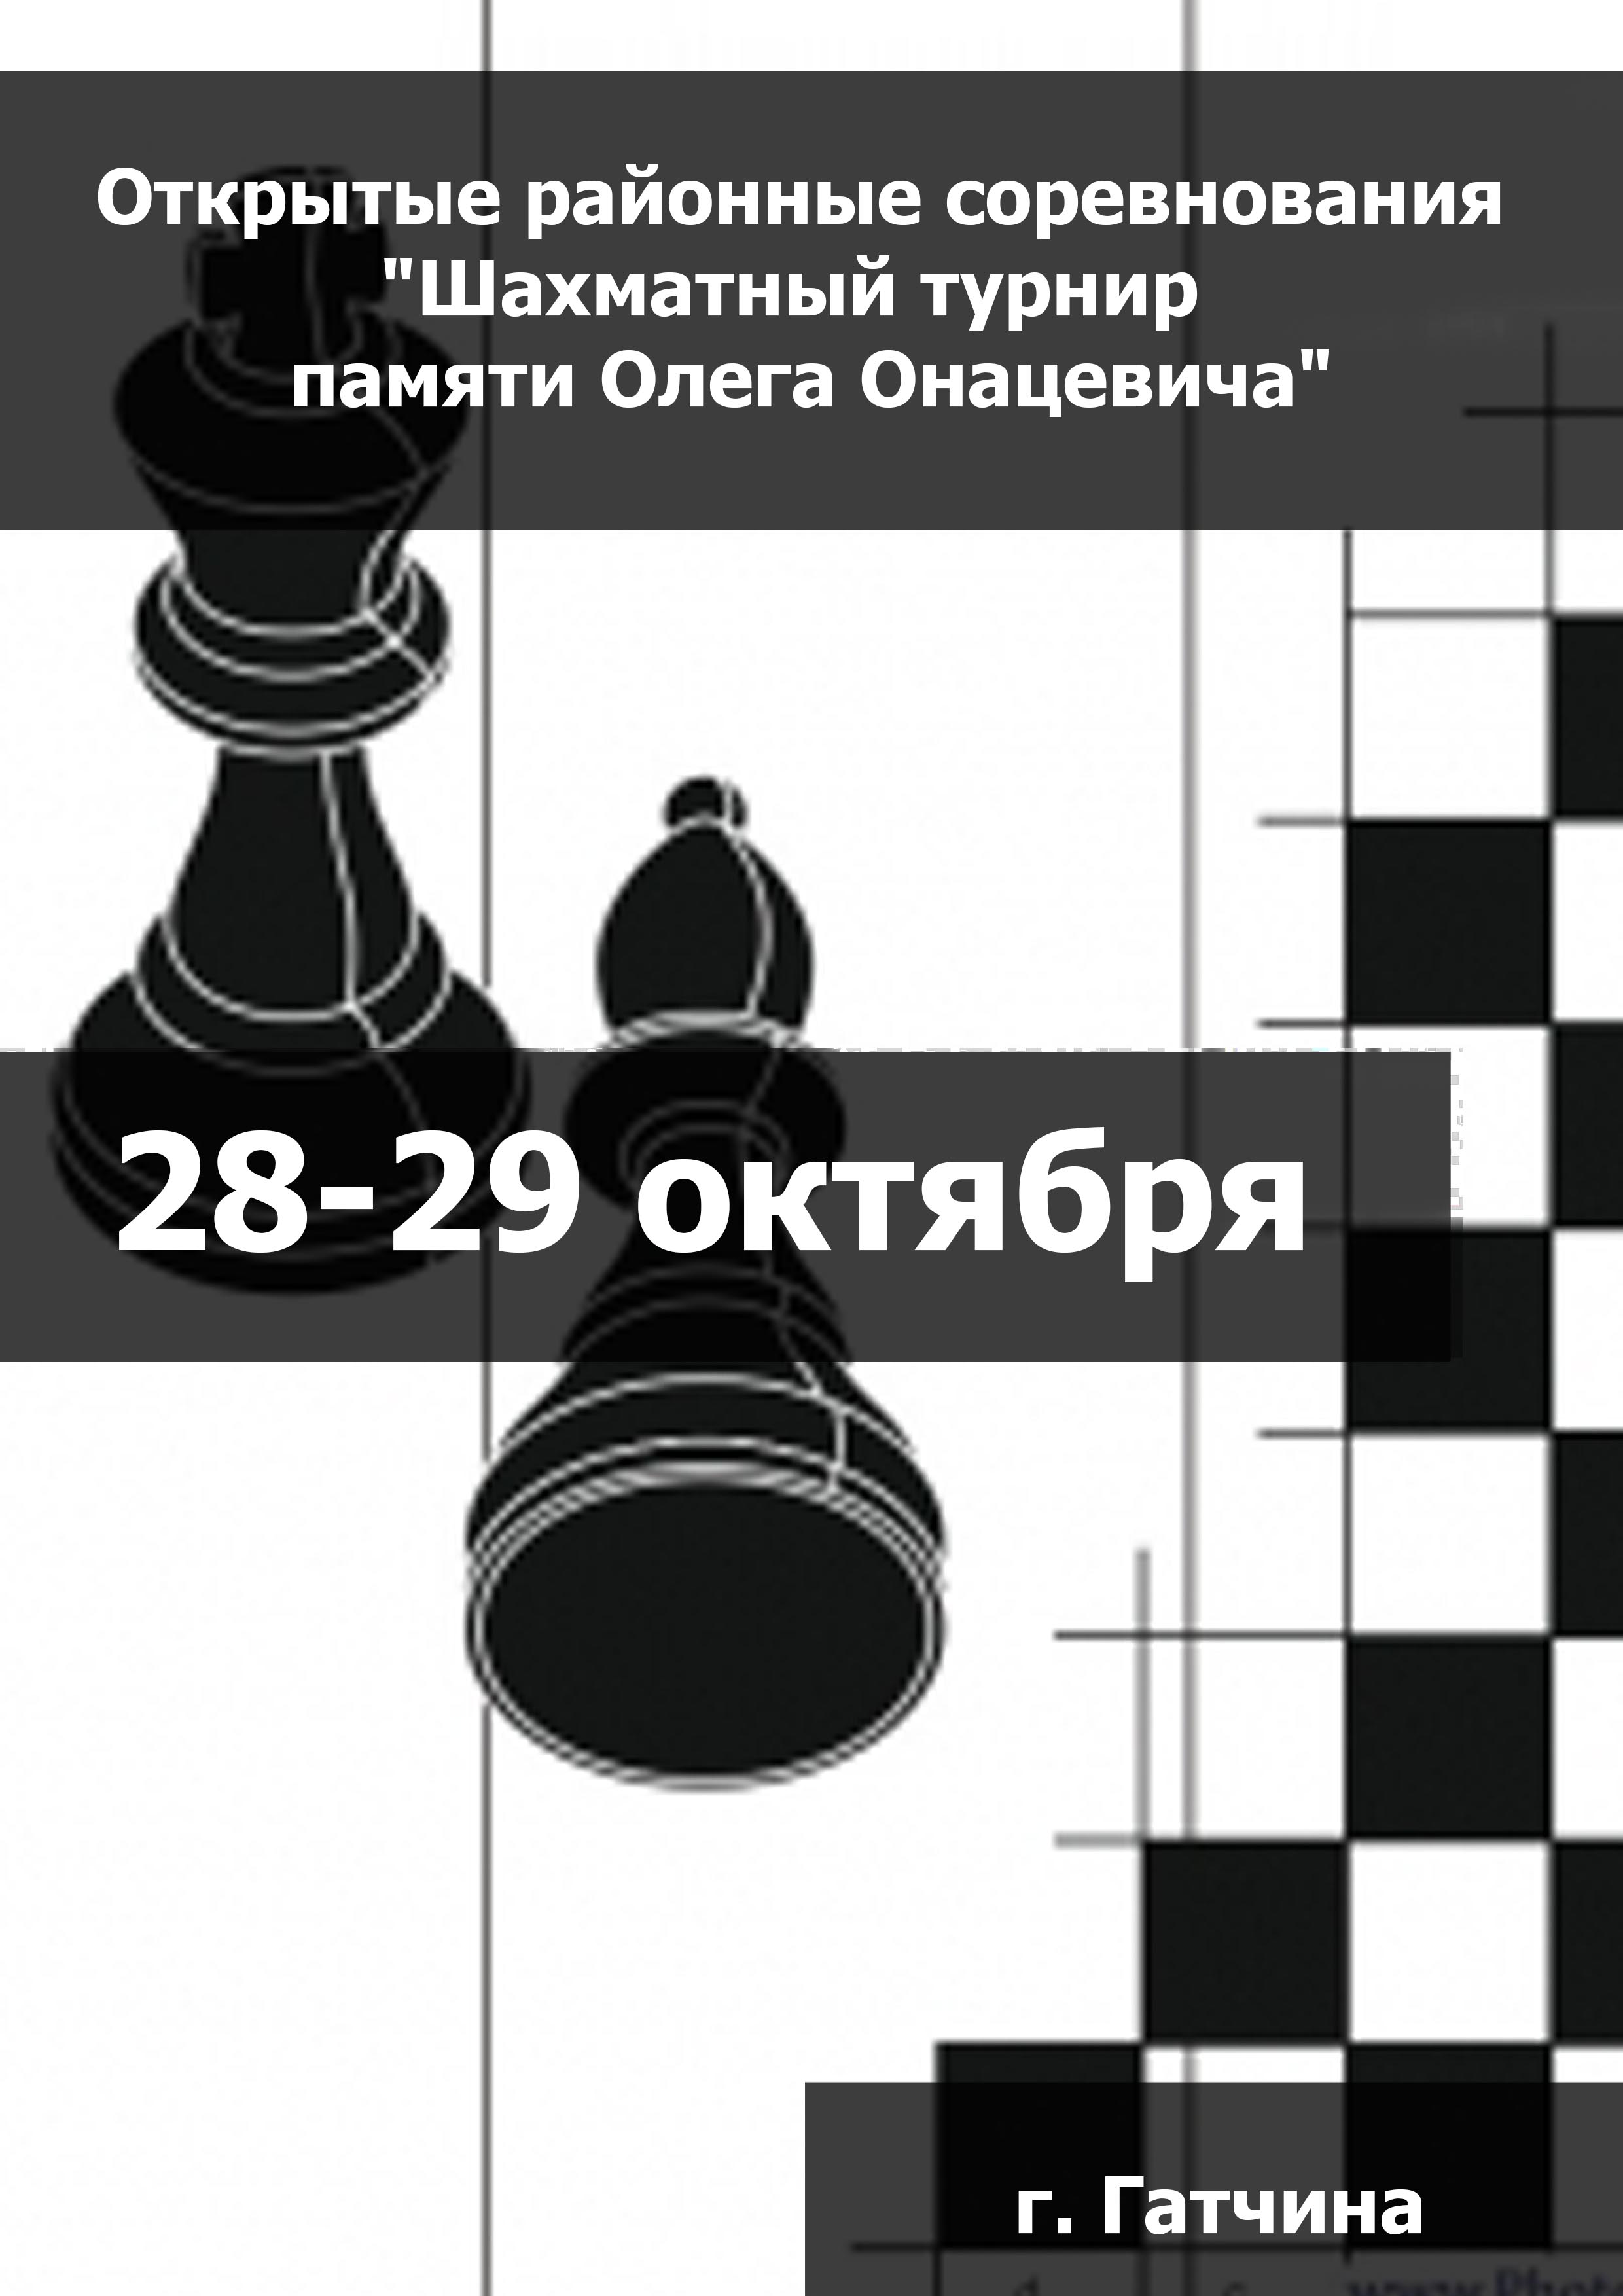 Открытые районные соревнования "Шахматный турнир  памяти Олега Онацевича" 28  அக்டோபர்
 2023  ஆண்டு
 